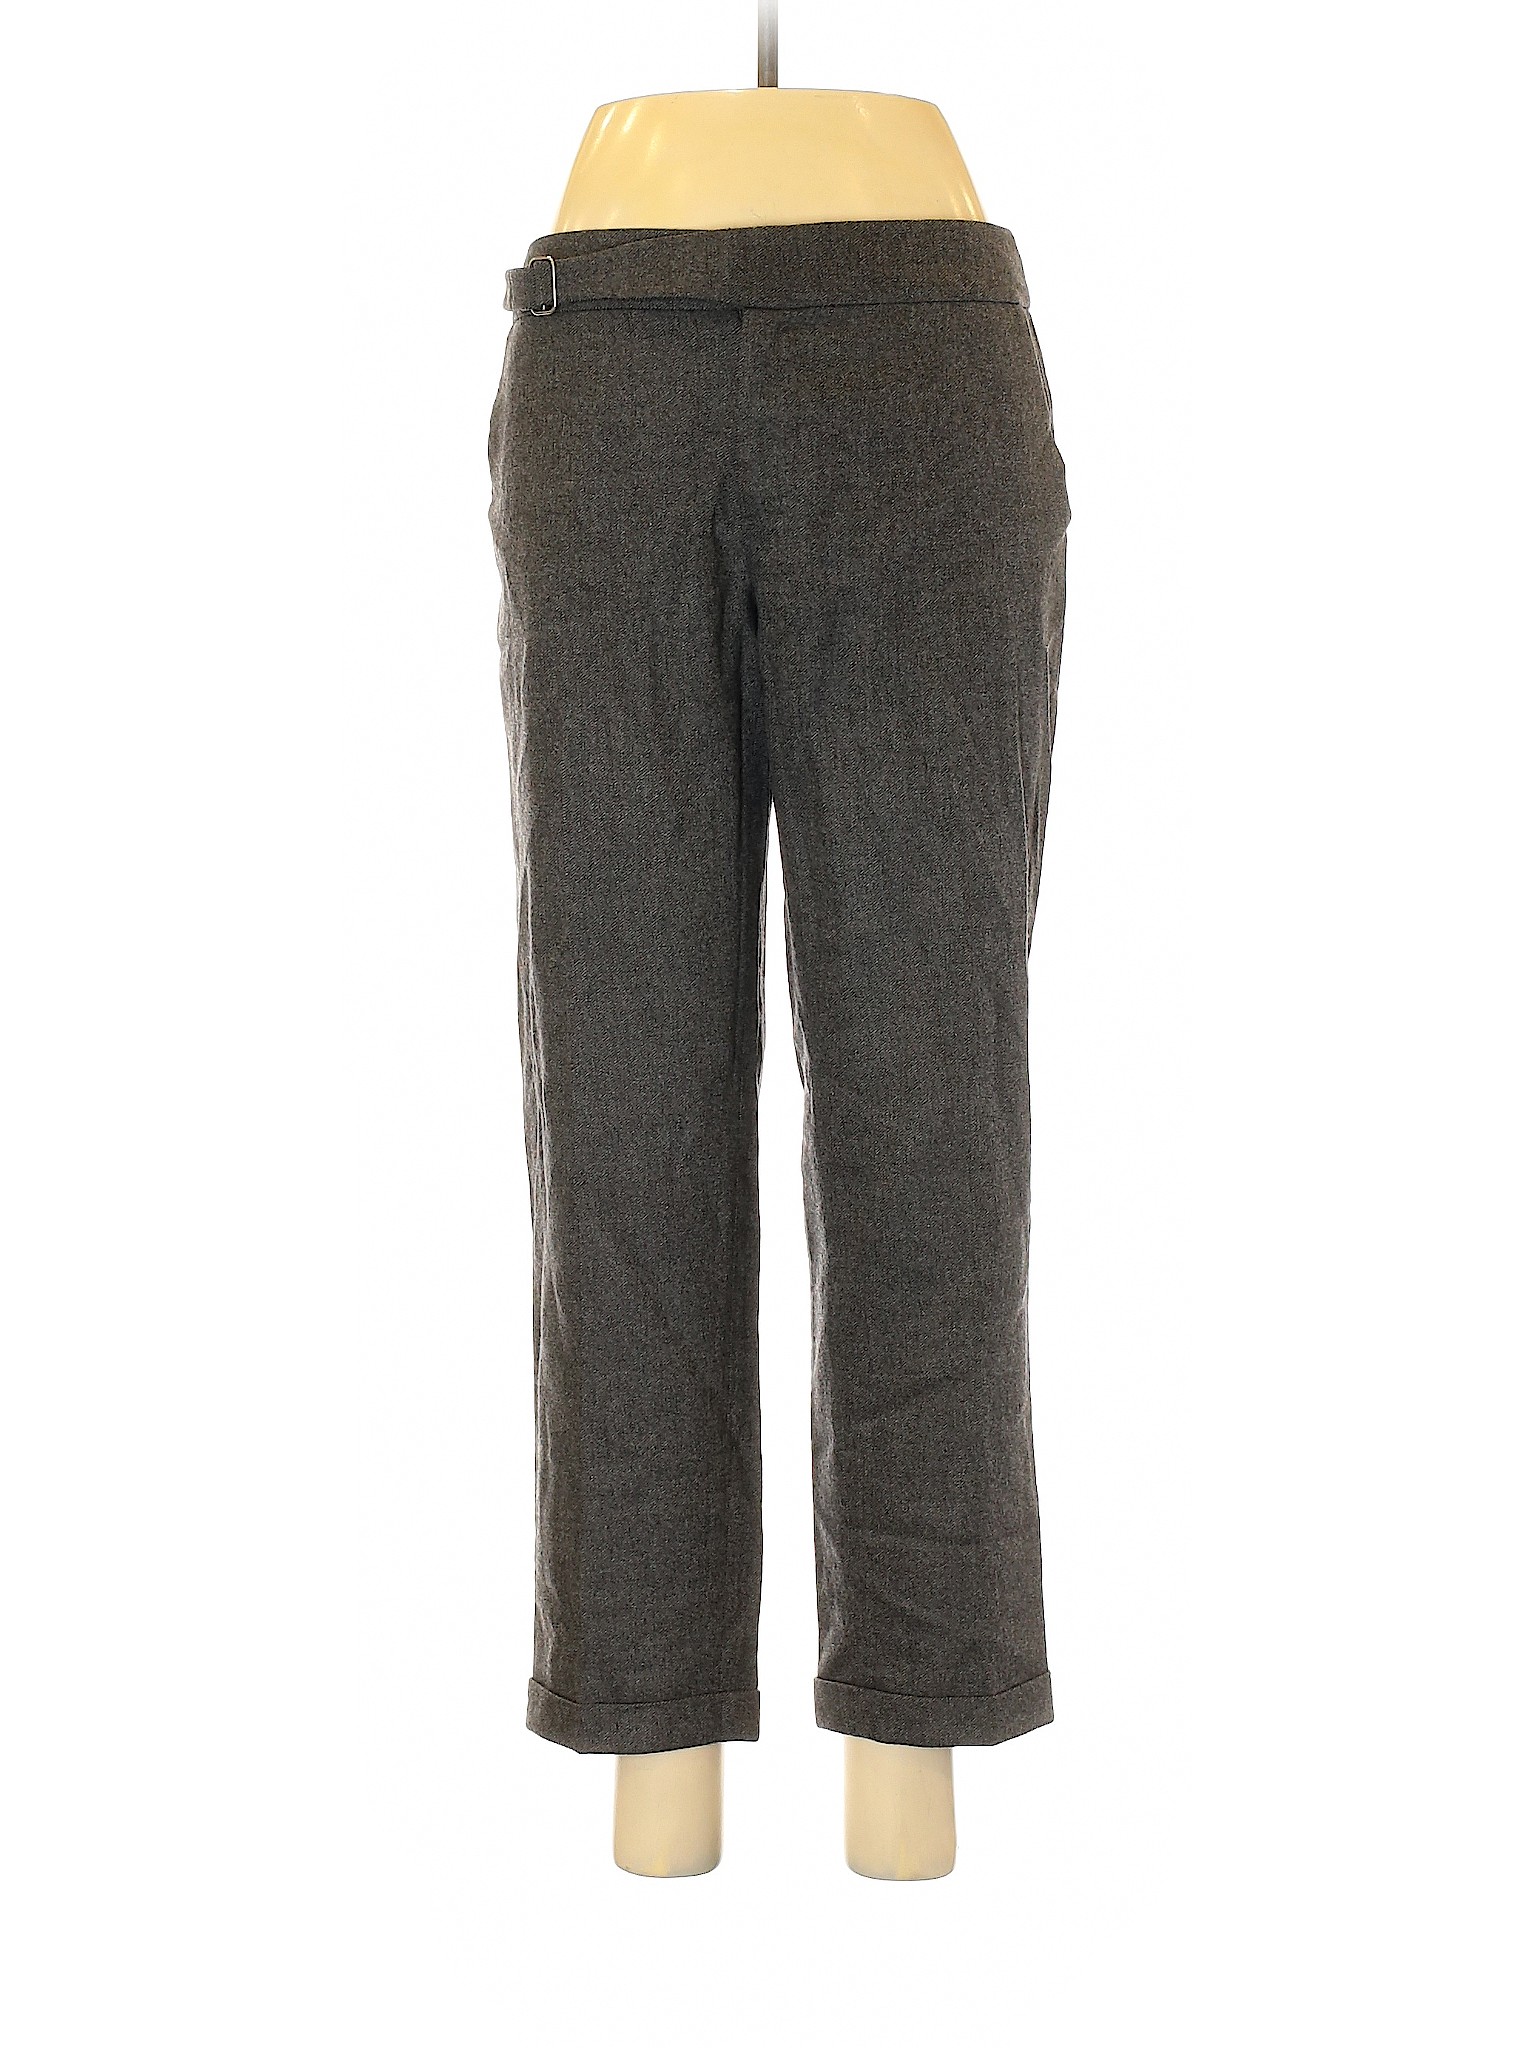 Jigsaw Women Gray Wool Pants 6 | eBay